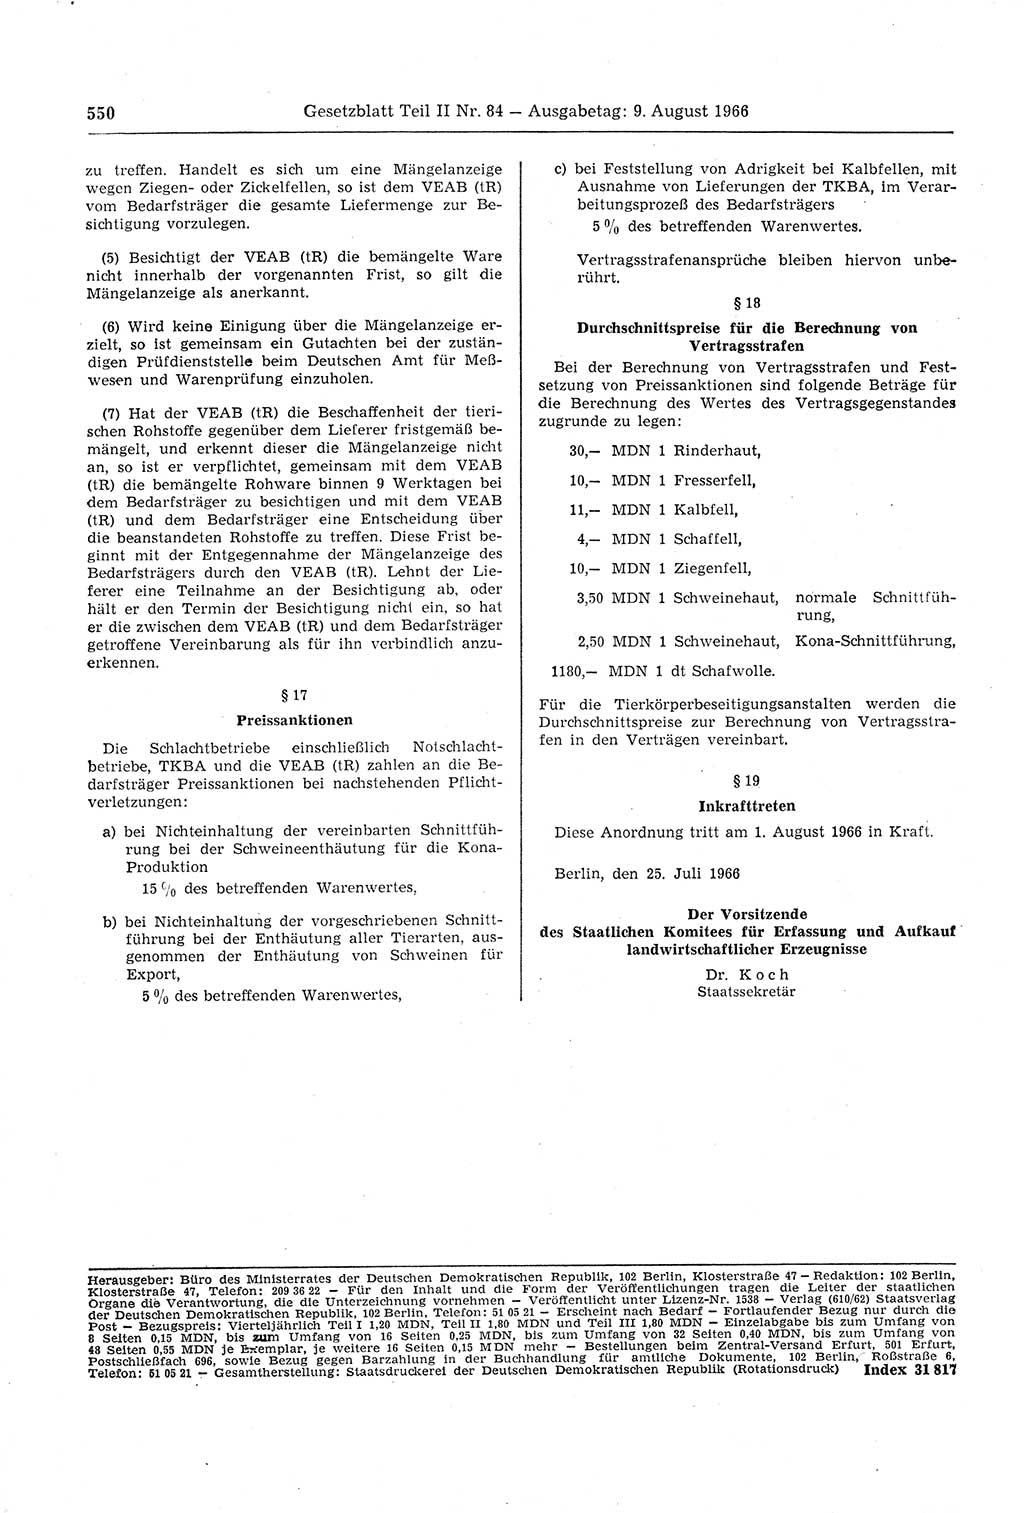 Gesetzblatt (GBl.) der Deutschen Demokratischen Republik (DDR) Teil ⅠⅠ 1966, Seite 550 (GBl. DDR ⅠⅠ 1966, S. 550)